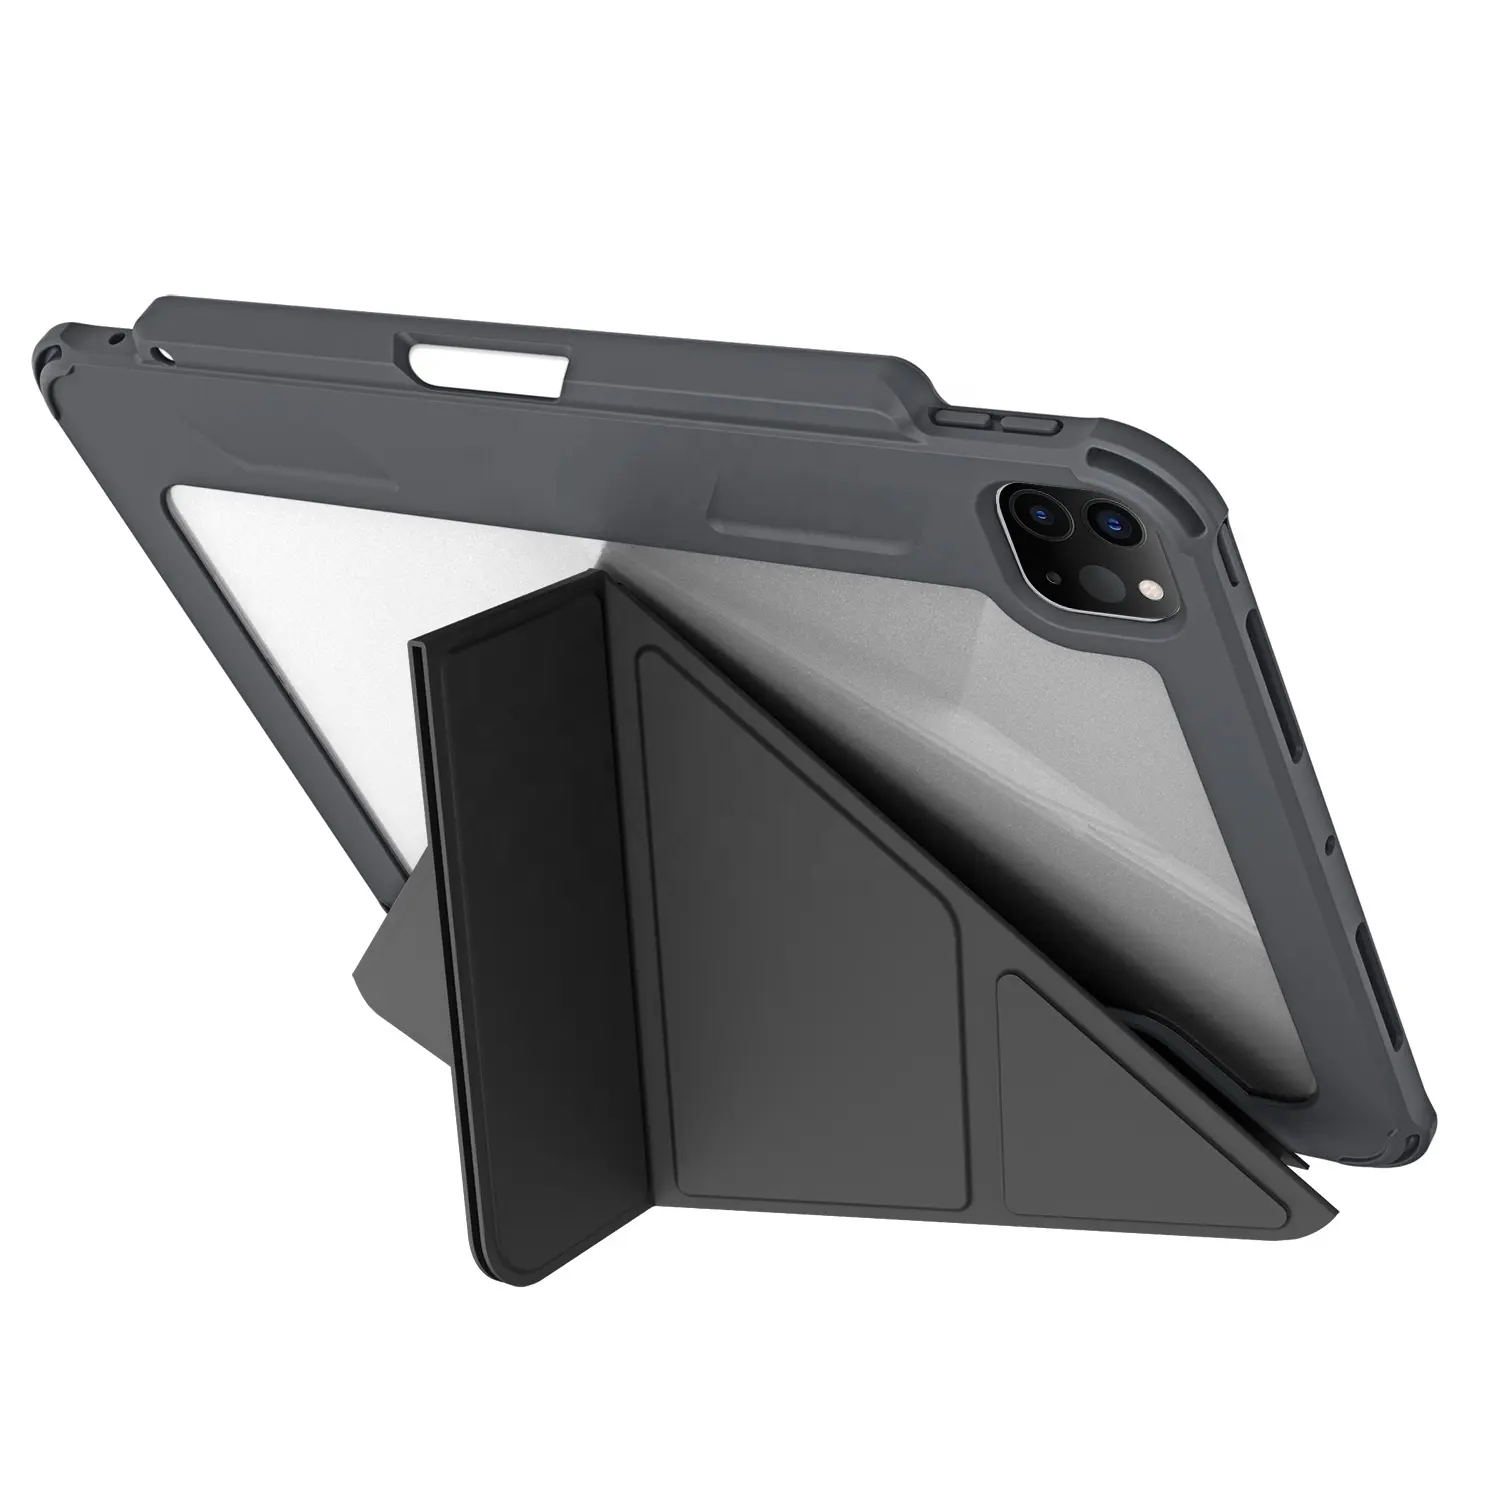 WOWCASE casing kulit iPad Bening, sarung HP kulit PC TPU empat sudut 2.0mm tahan guncangan untuk iPad Air 10.9 inci 6/5/4th